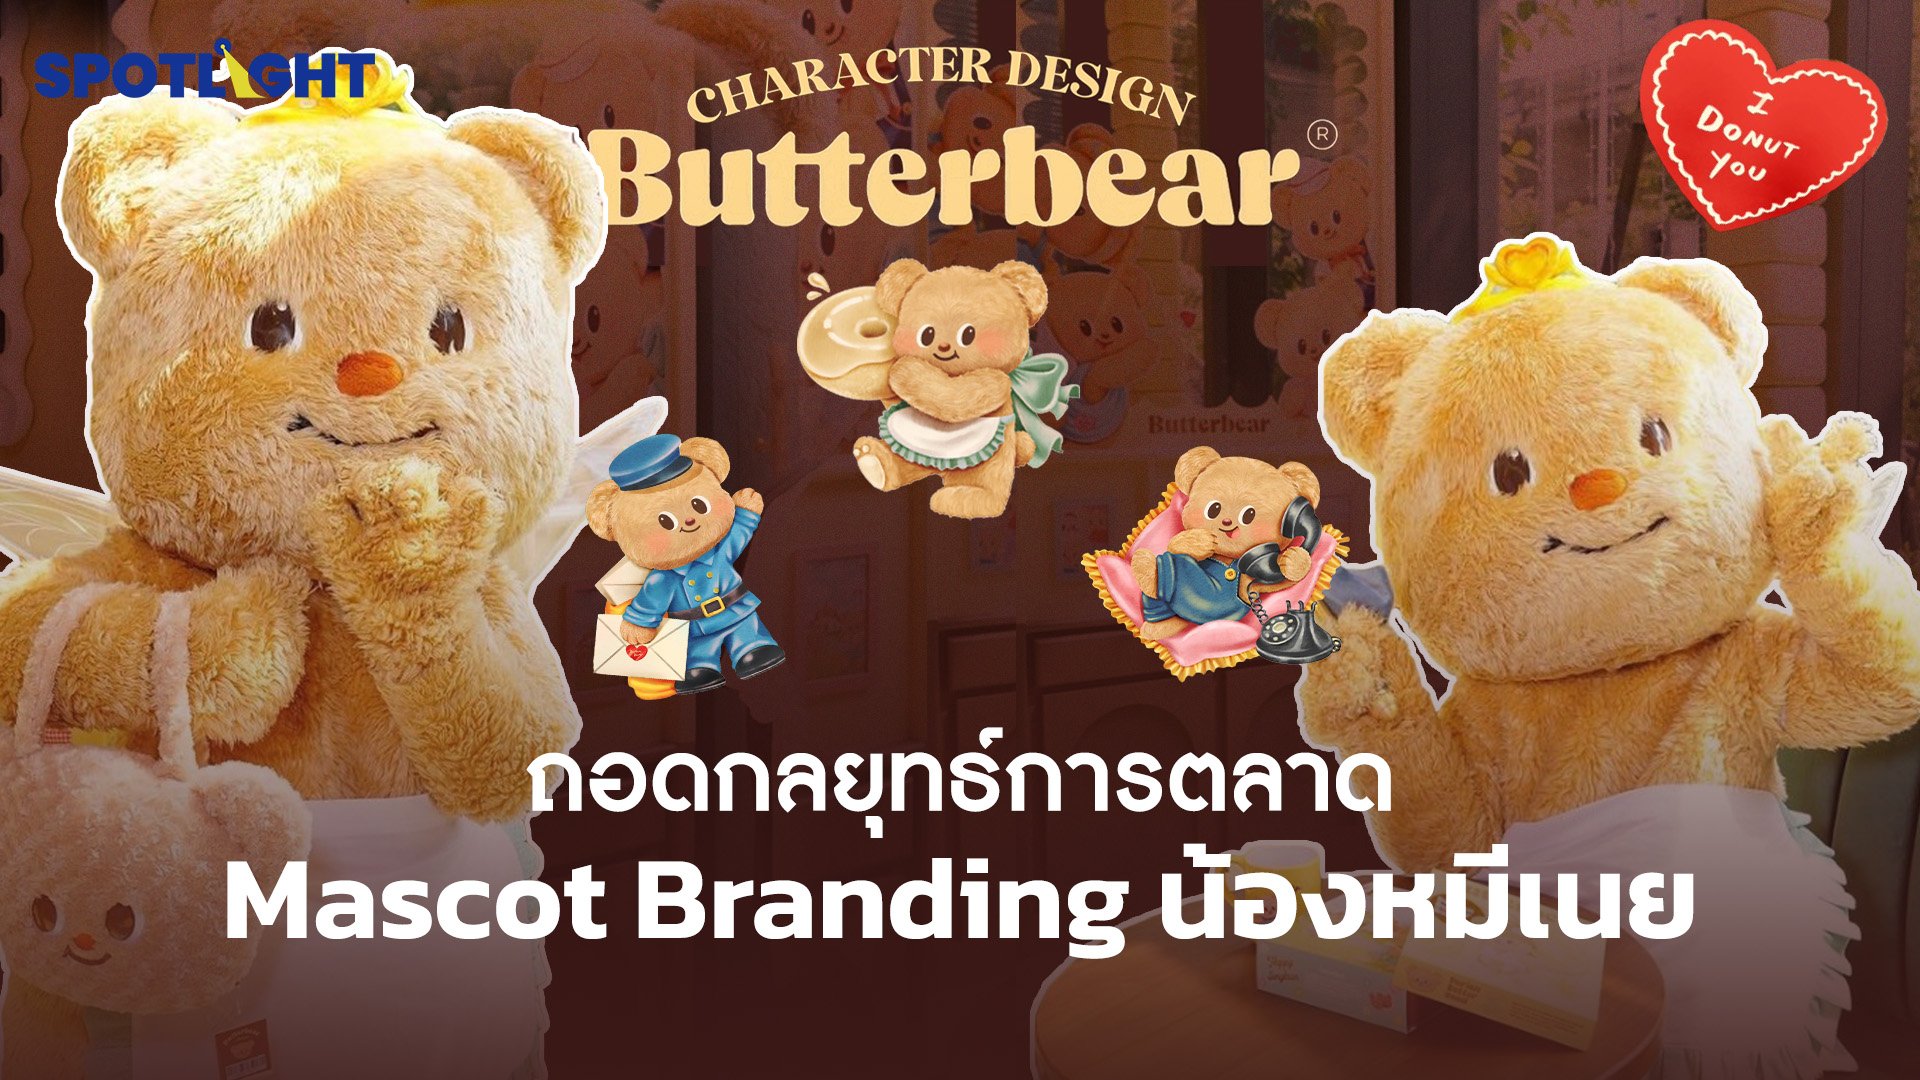 ถอดกลยุทธ์ทางการตลาด Mascot Branding น้องหมีเนยทำไมถึงดัง | Spotlight | 13 มิ.ย. 67 | AMARIN TVHD34